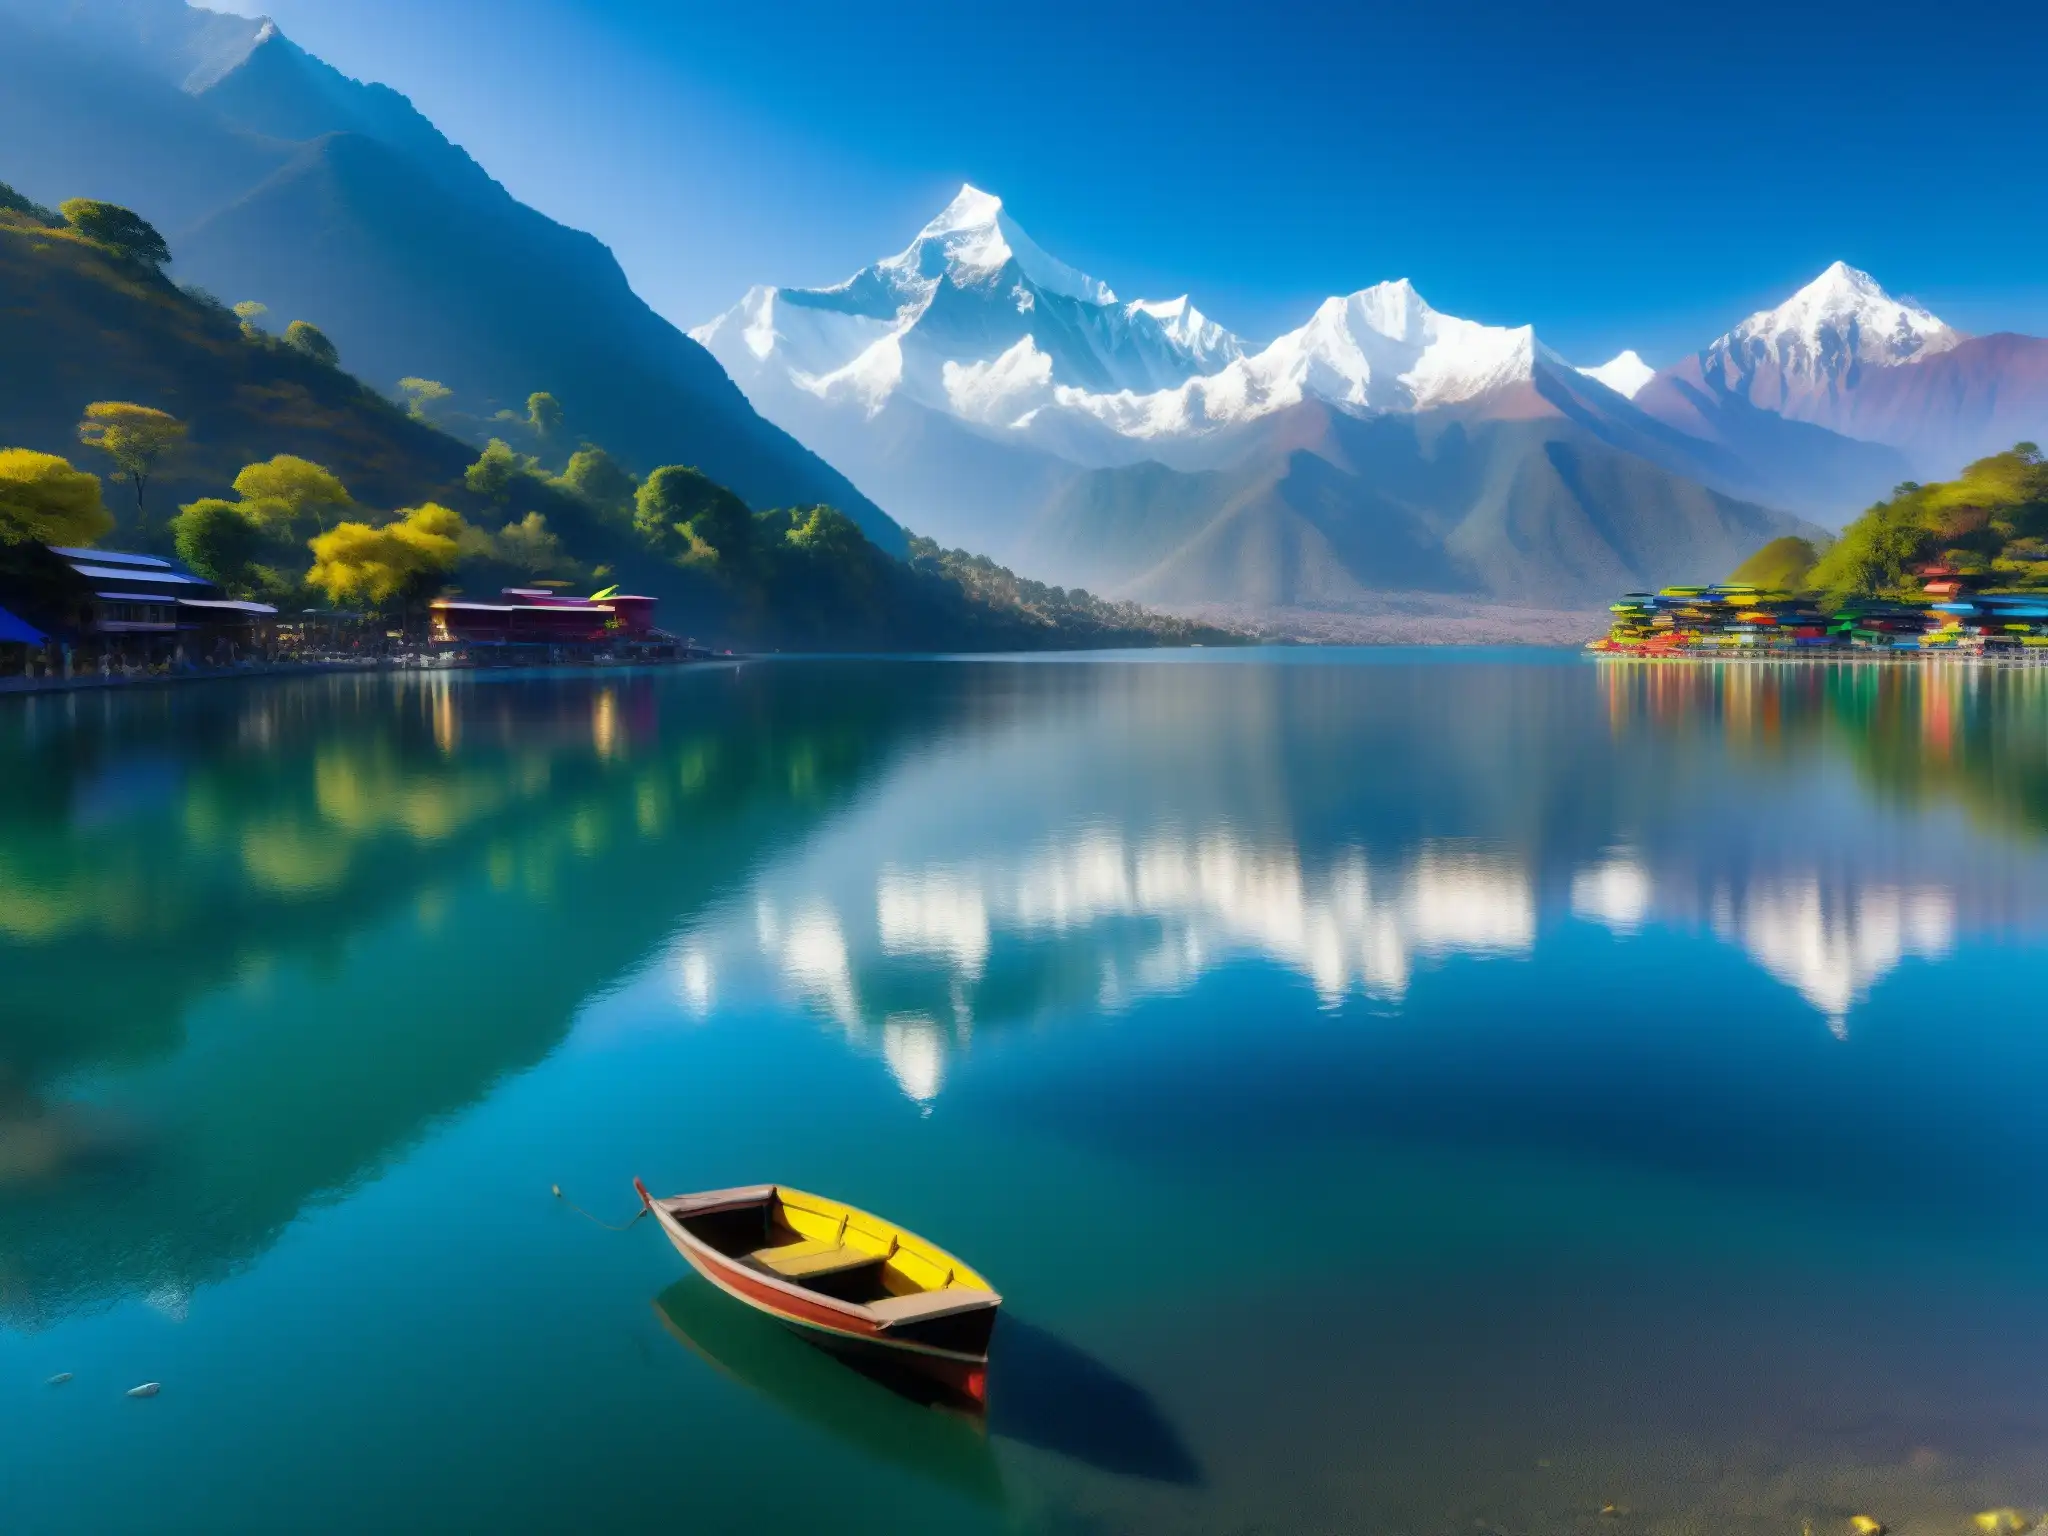 Imagen de alta resolución del sereno lago Phewa con las majestuosas montañas Annapurna al fondo, reflejando la leyenda de la Dama del Lago en Nepal